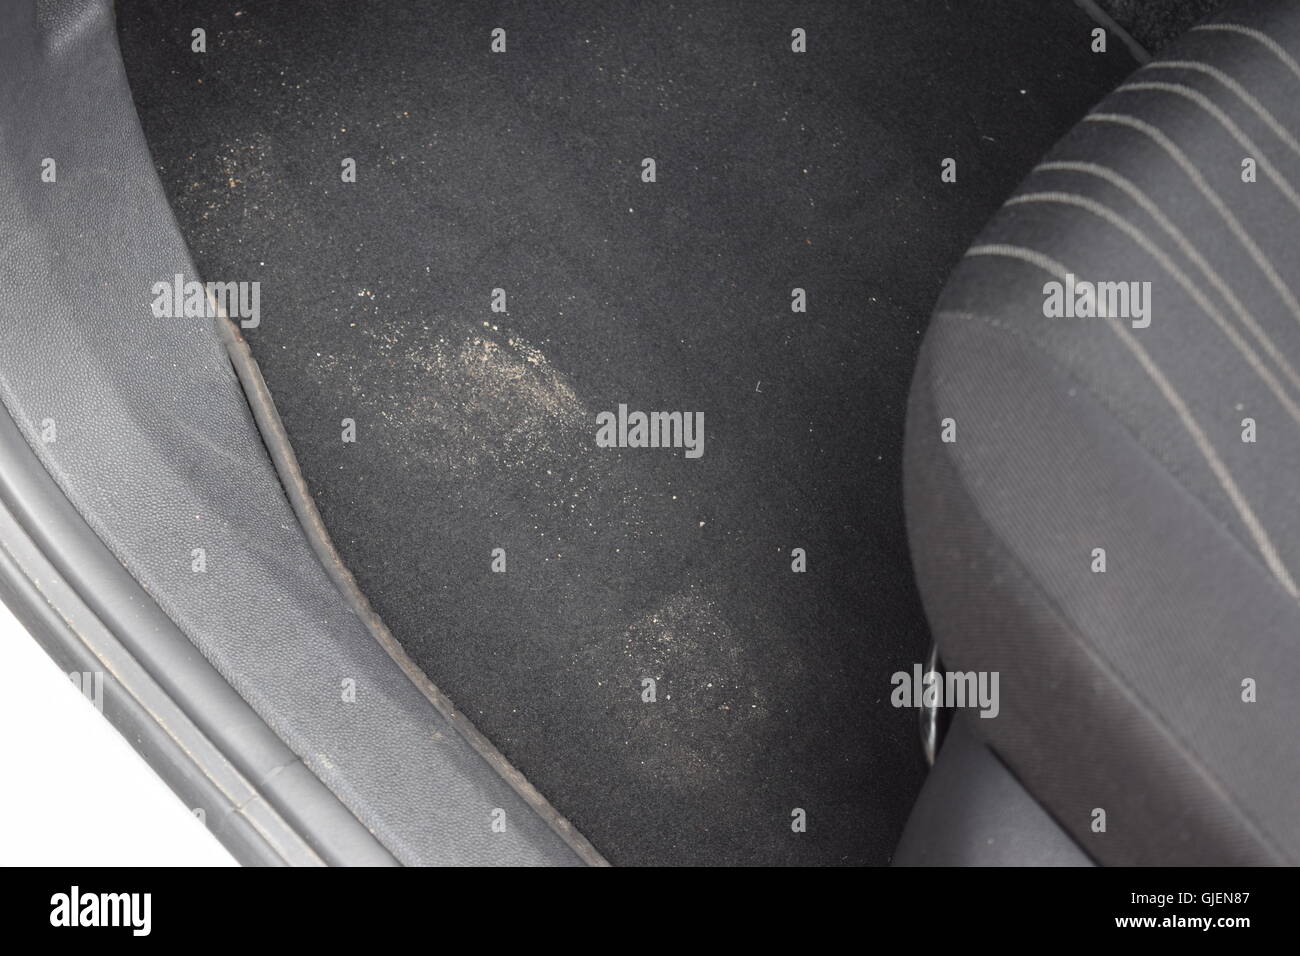 Schmutziges auto Fußmatten aus schwarzem Gummi mit Gaspedal und Bremsen in  der Werkstatt für die Detaillierung Fahrzeugs vor der Reinigung. Auto  Service Industrie Stockfotografie - Alamy